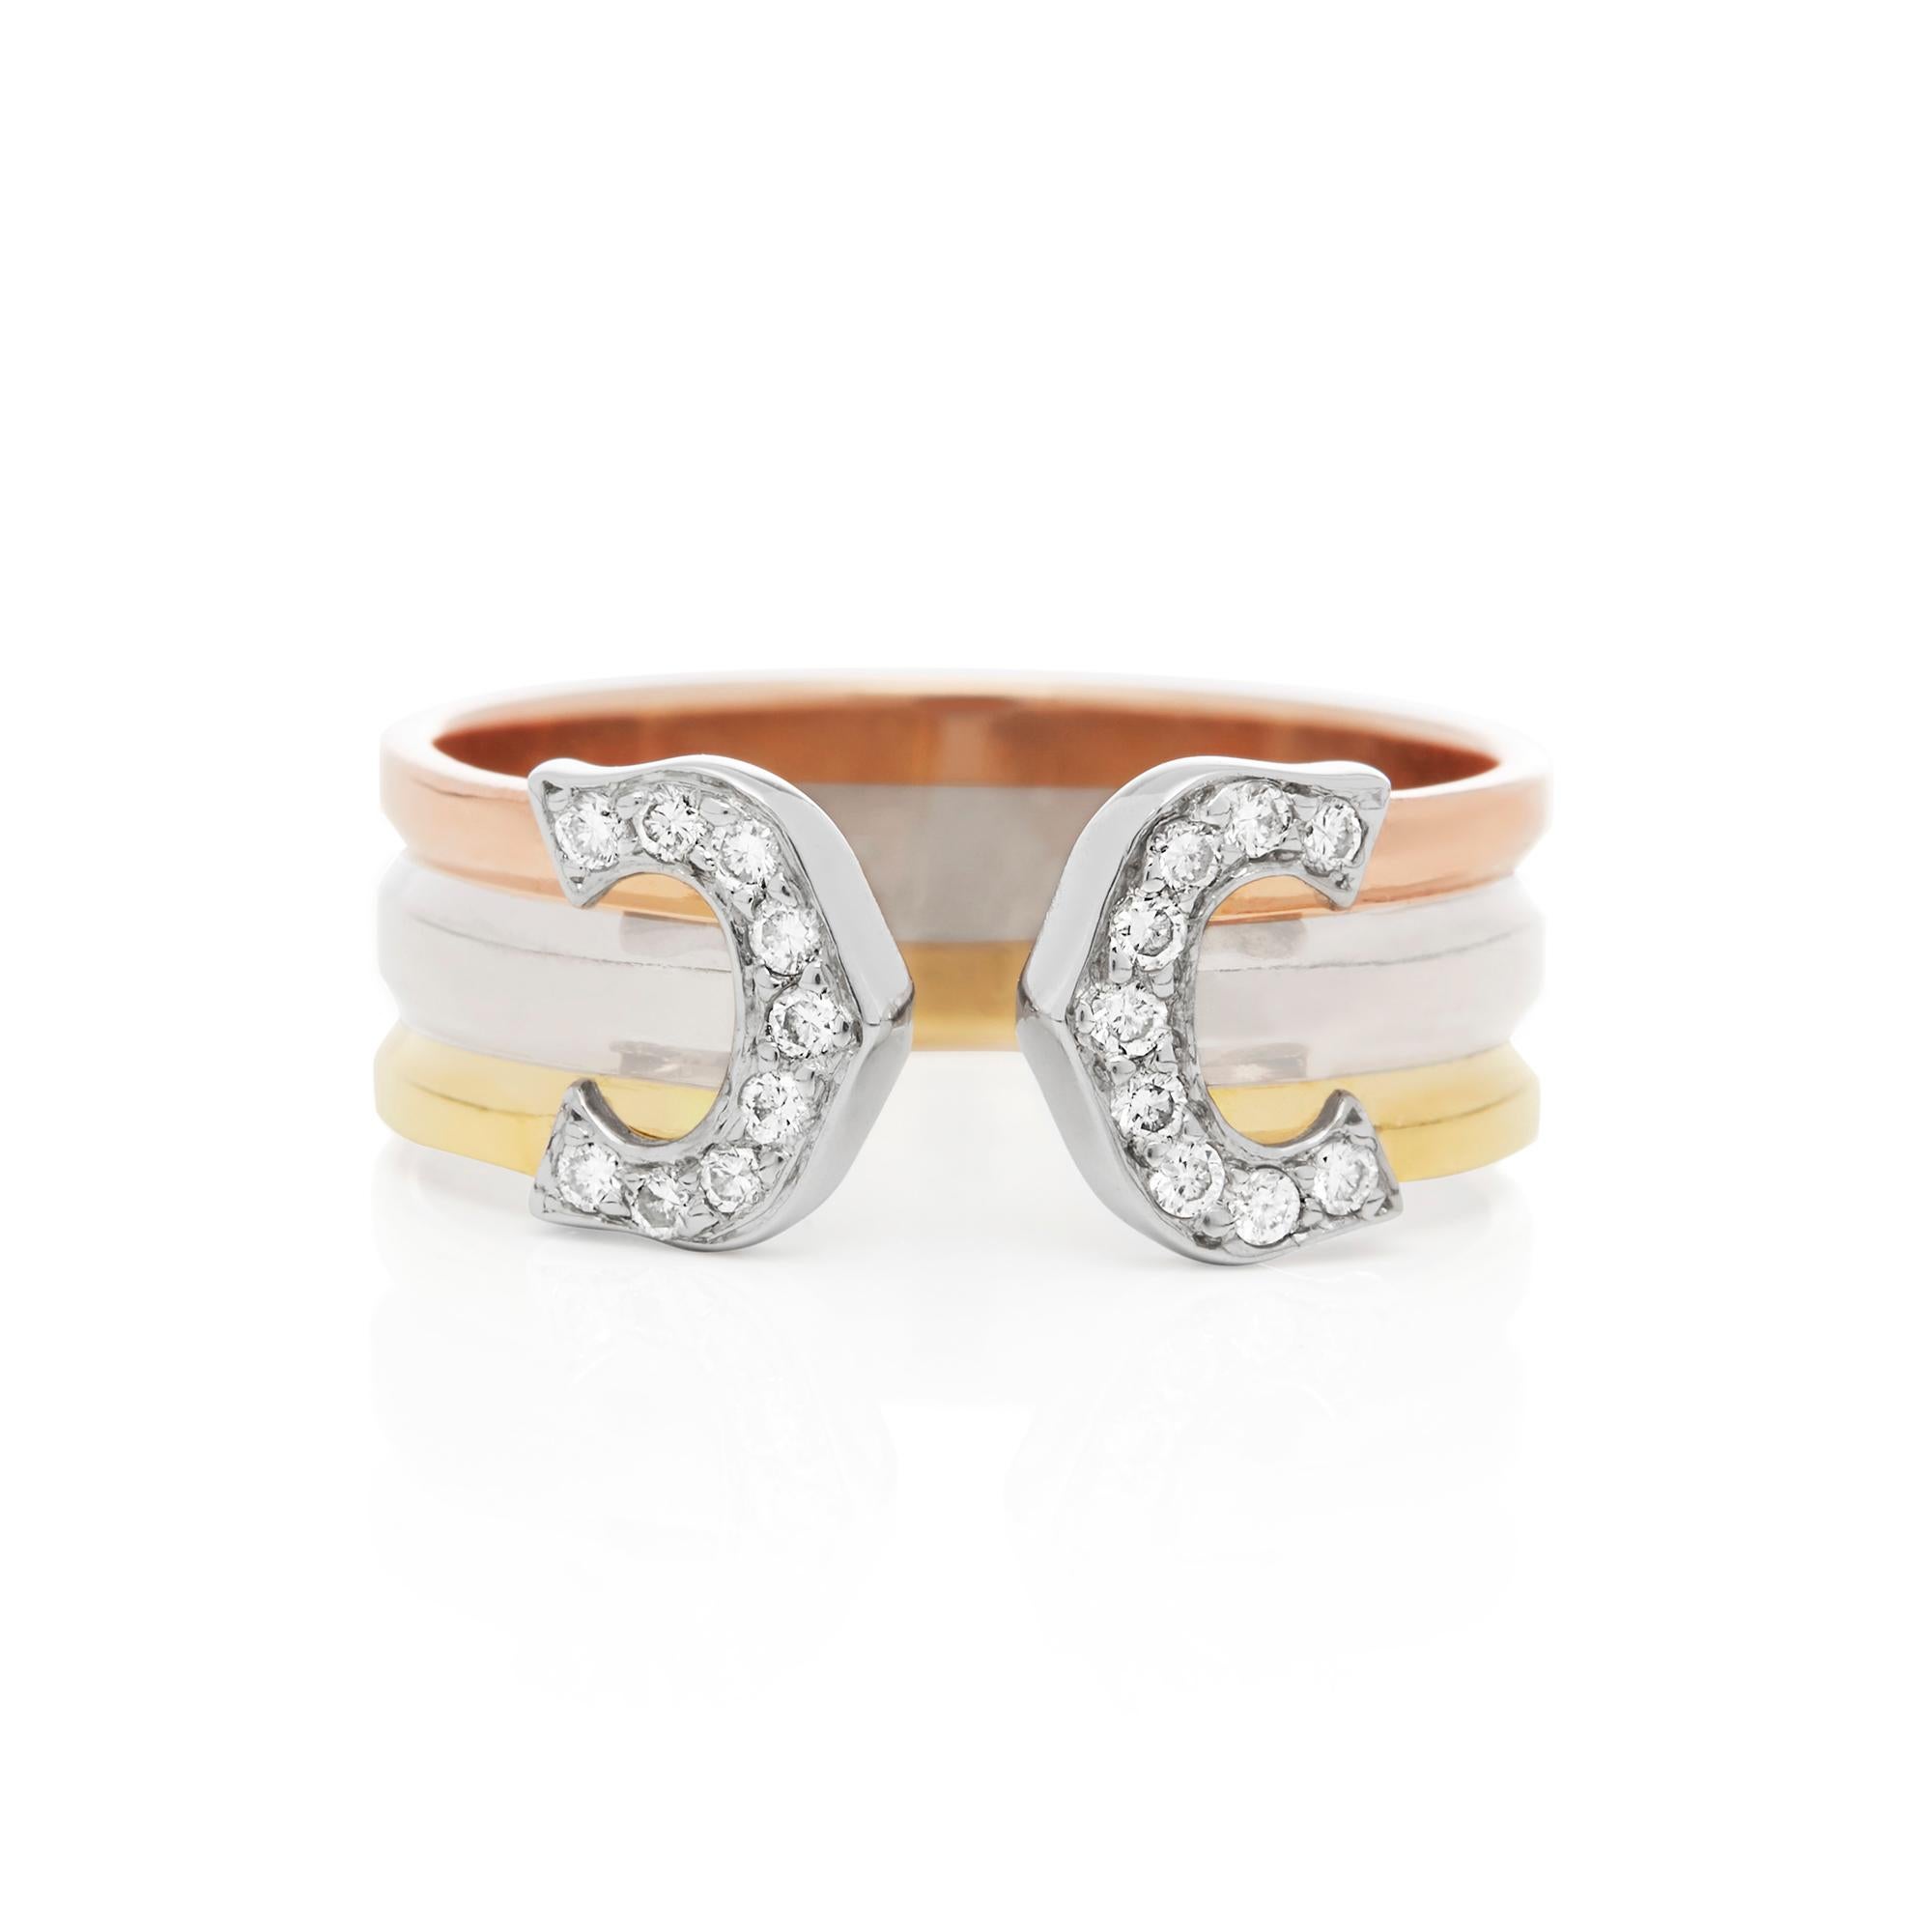 Modern Cartier 18 Karat Yellow, White and Rose Gold C De Cartier Diamond Ring